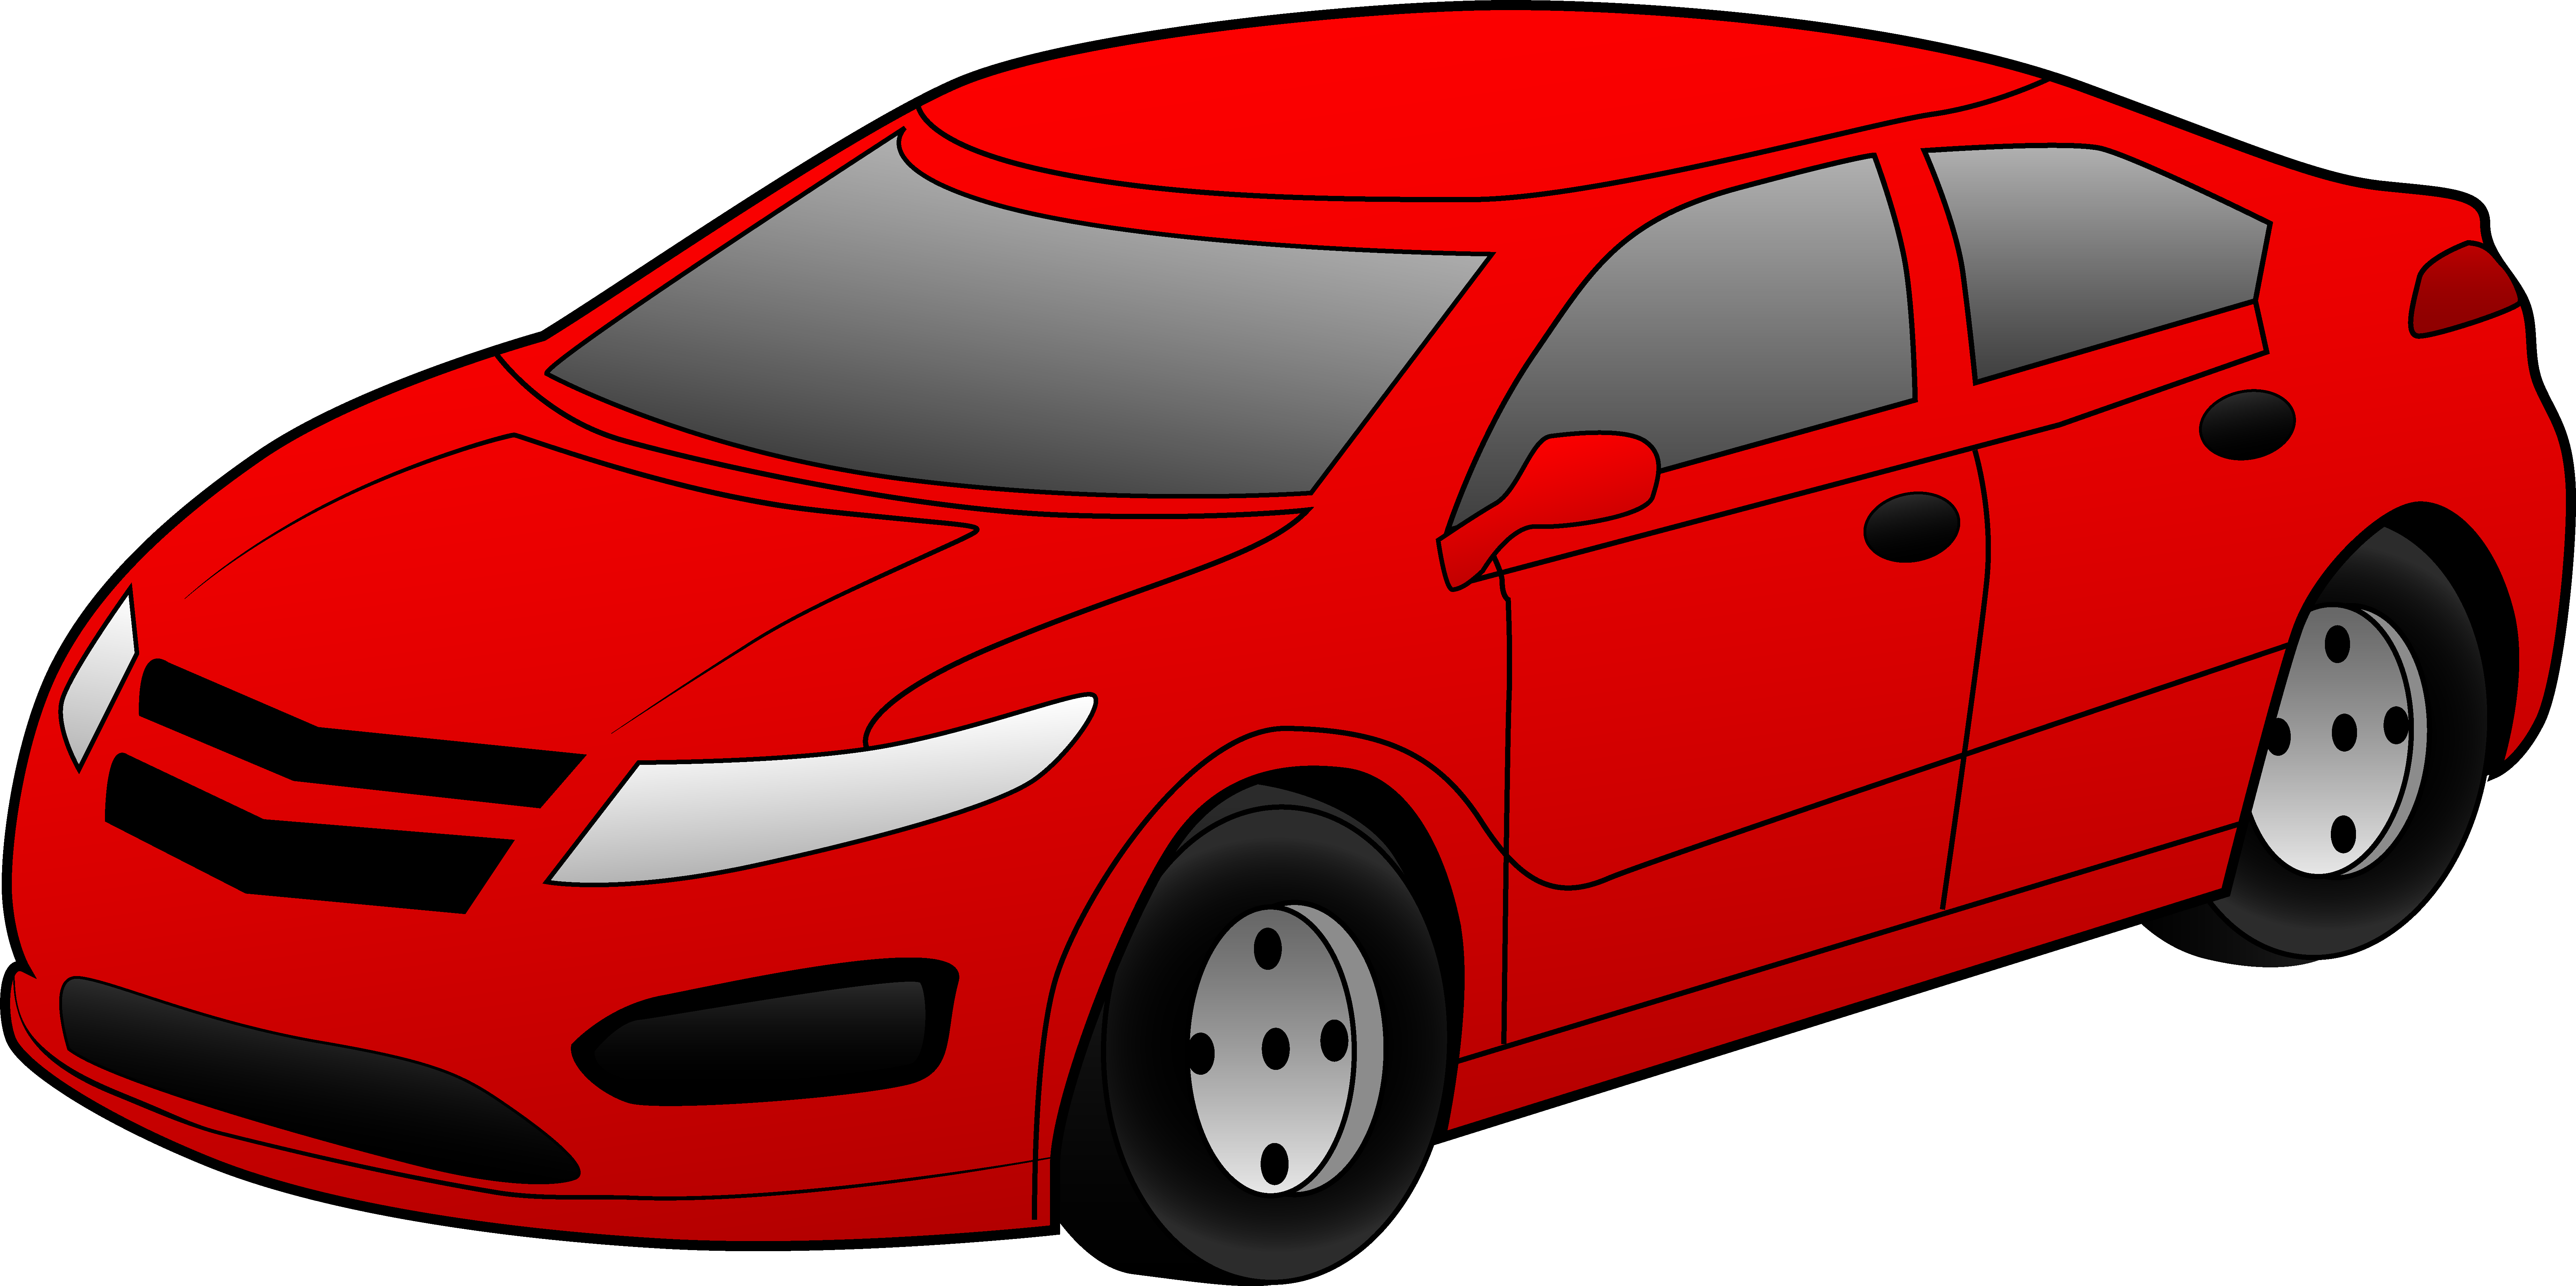 Cool Red Sports Car Free u0026middot; Sports Car Clipart